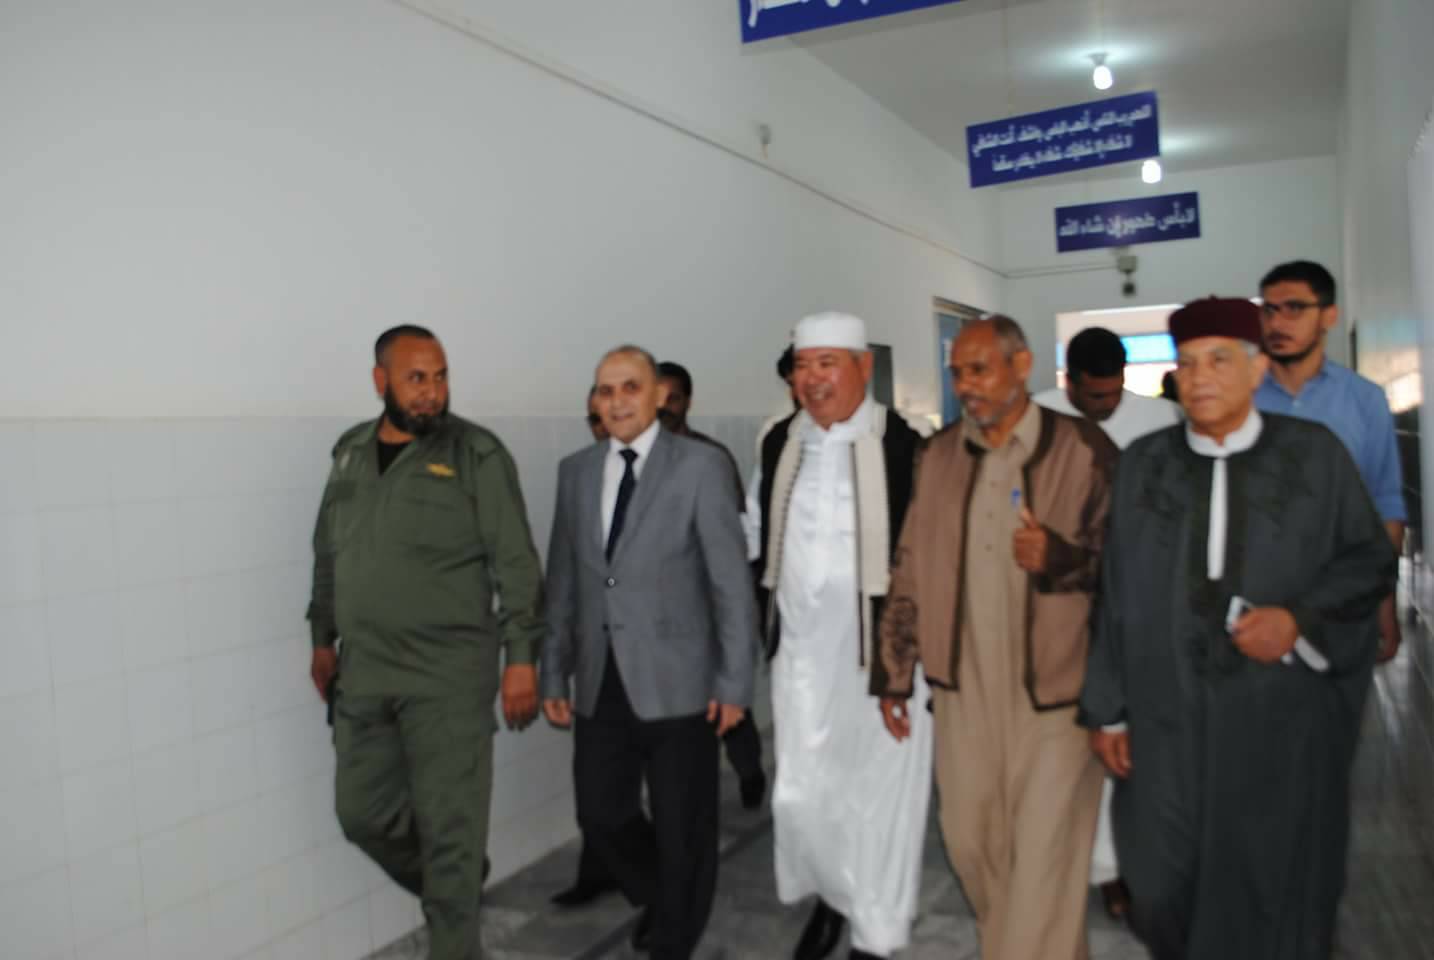 وفد من المؤسسة الوطنية للنفط يزور مستشفى امحمد المقريف في أجدابيا